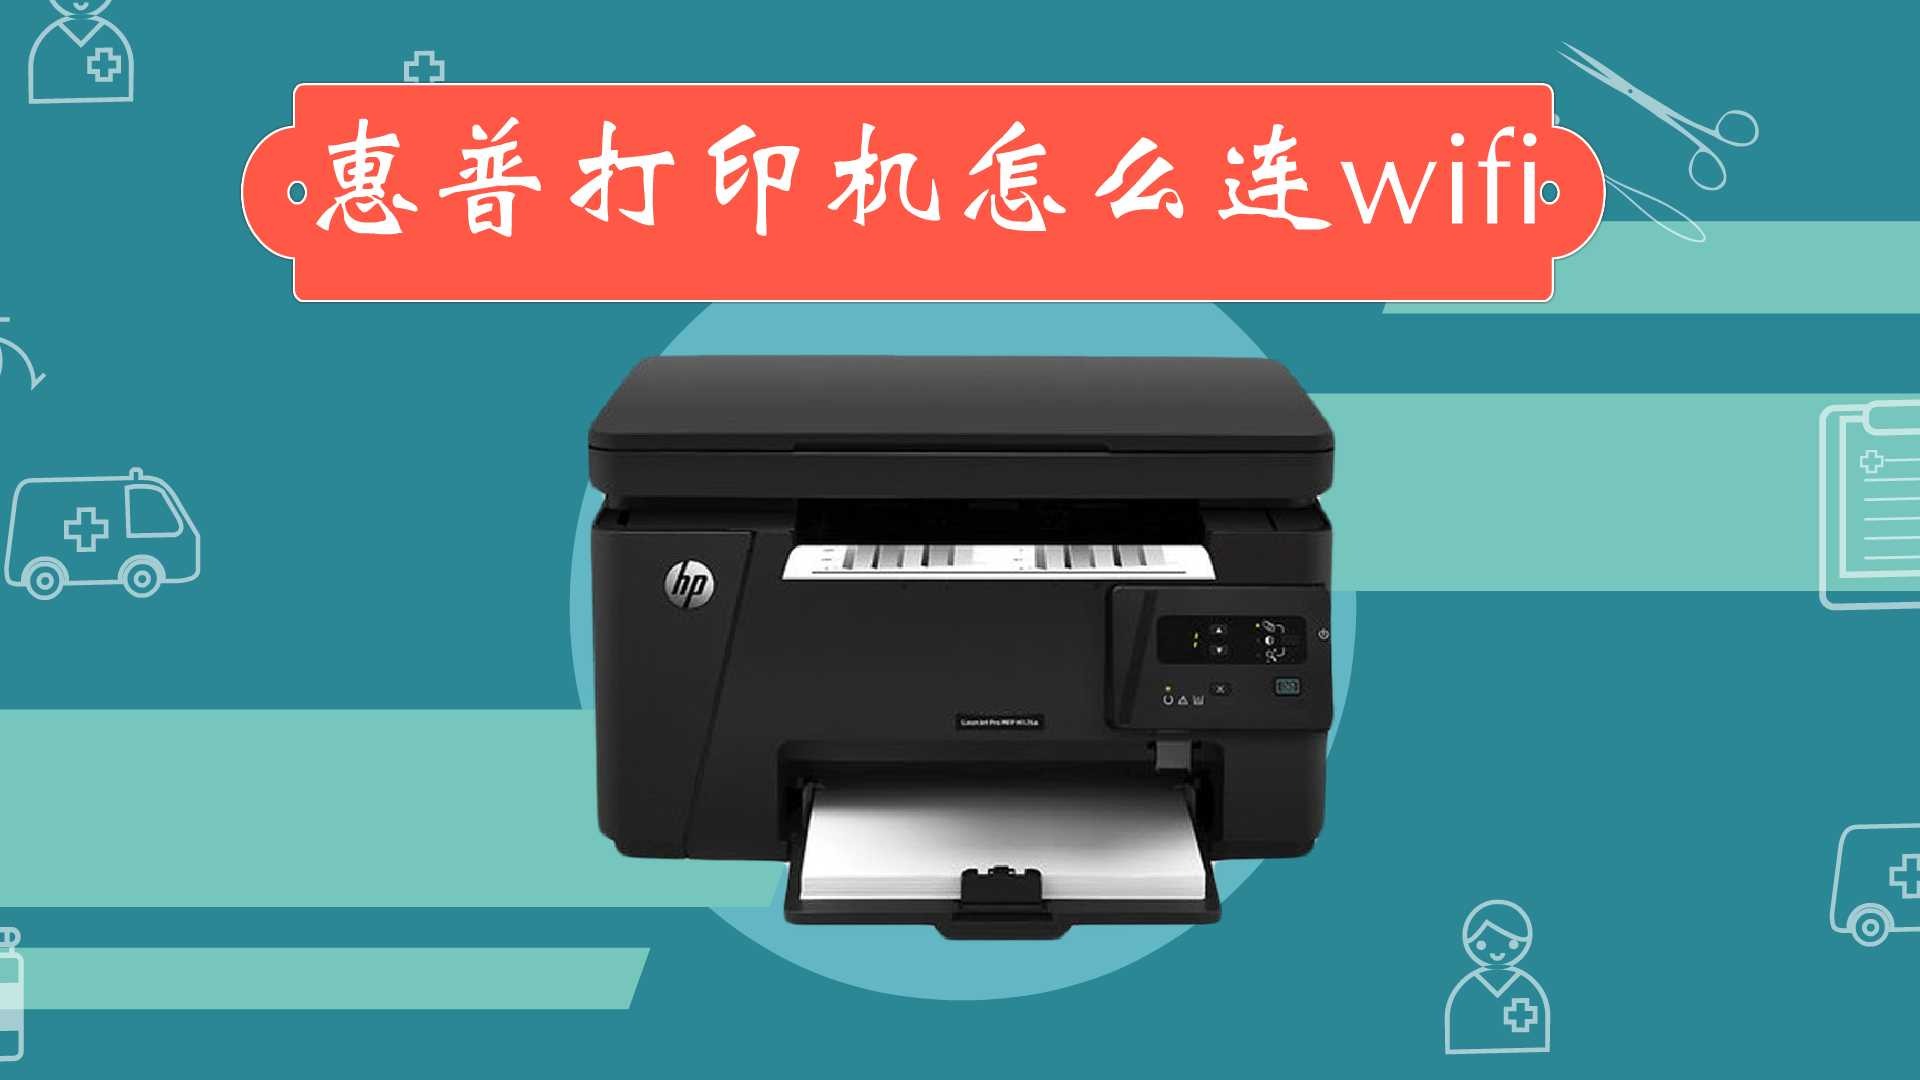 便携式打印机使用教程视频(家用小型打印机使用教学视频)